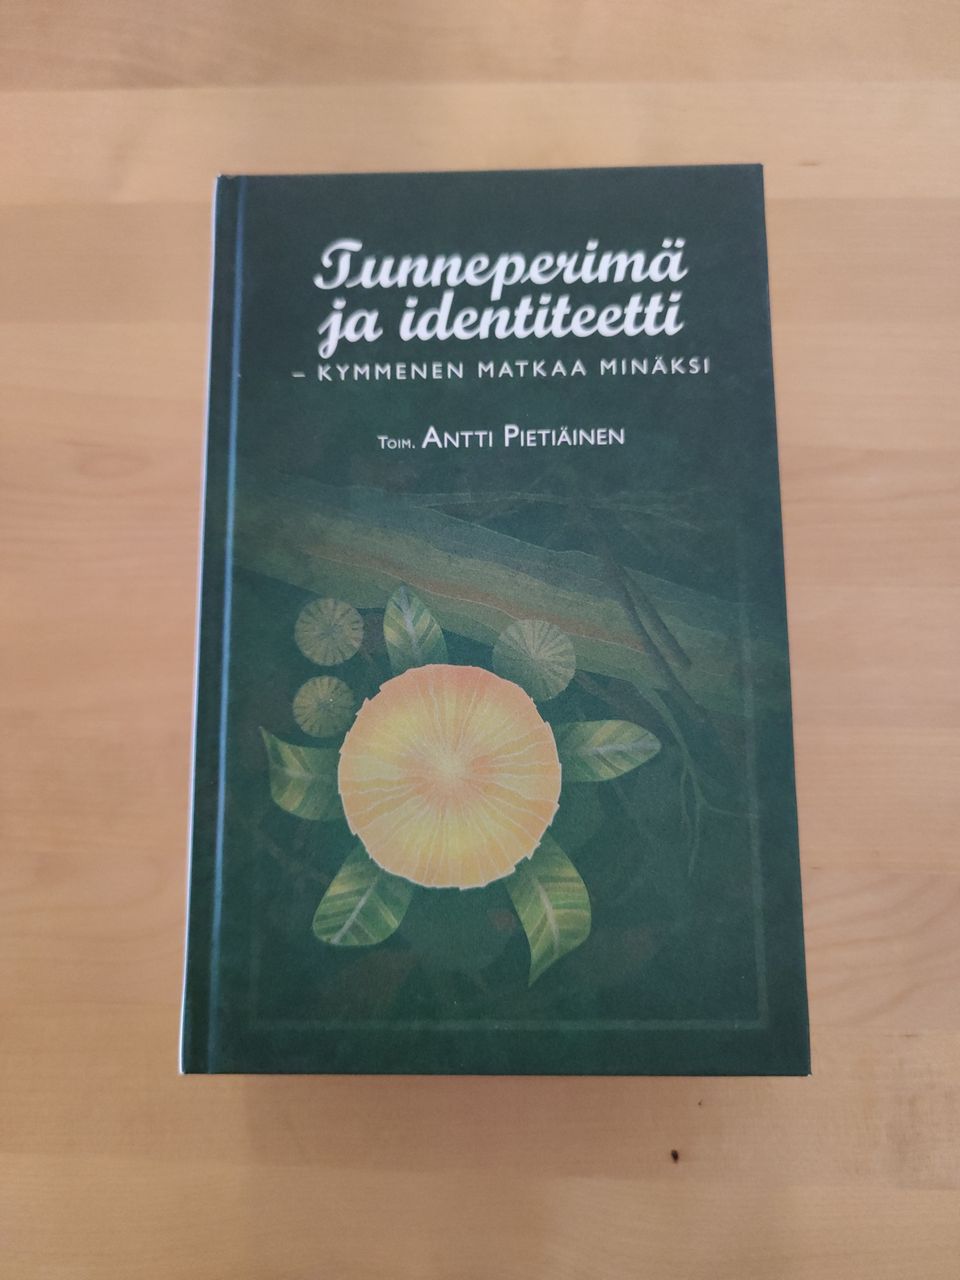 Antti Pietiäinen: Tunneperimä ja identiteetti - Kymmenen matkaa minäksi